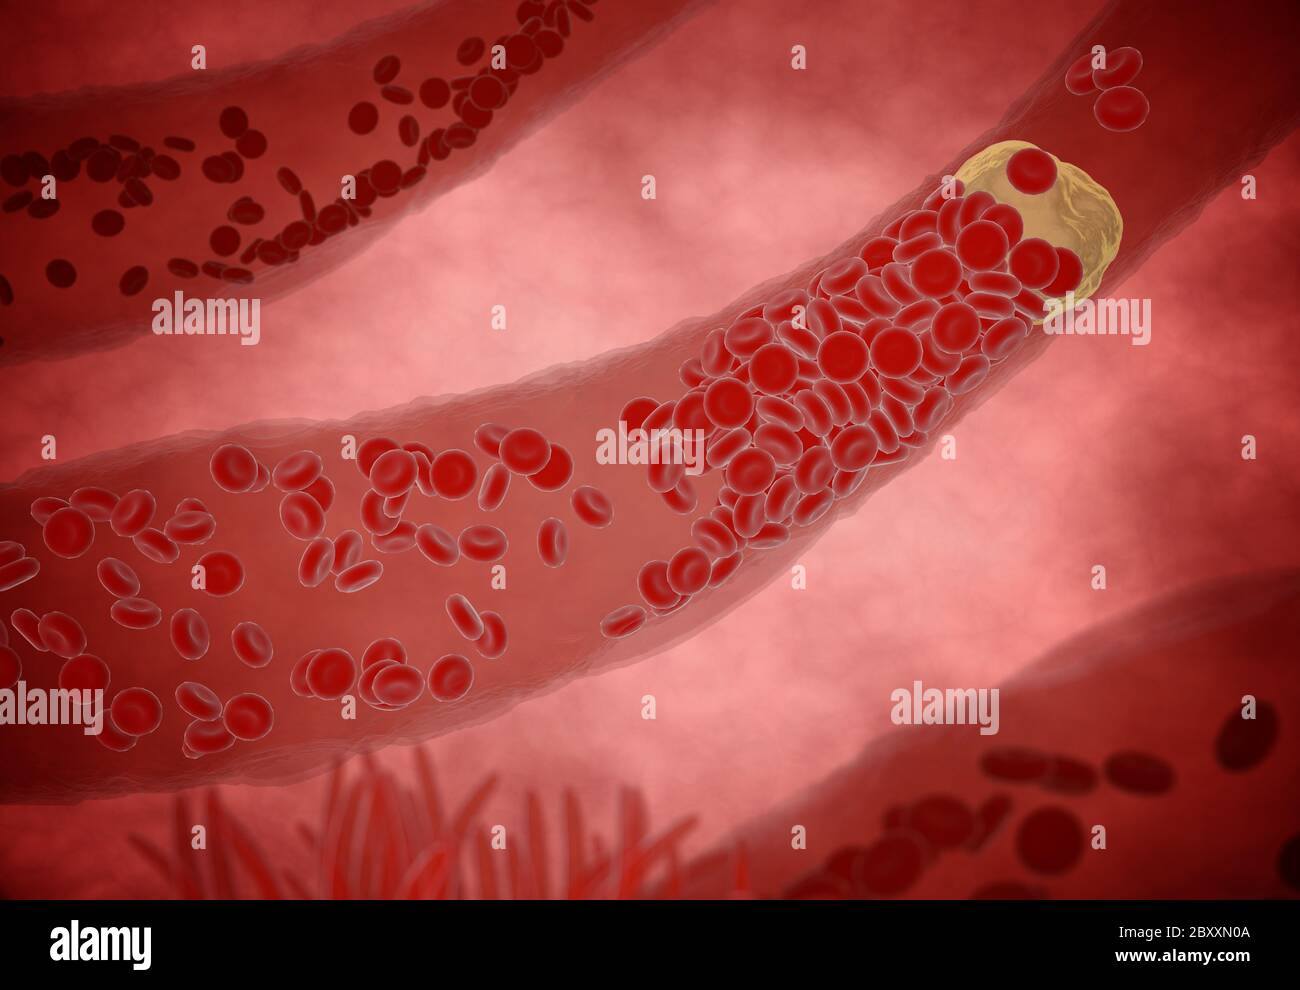 Verstopfte Arterie mit Blutplättchen und Cholesterin Plaque, Konzept für das Gesundheitsrisiko Adipositas oder Diät-Probleme. 3d-Rendering Stockfoto